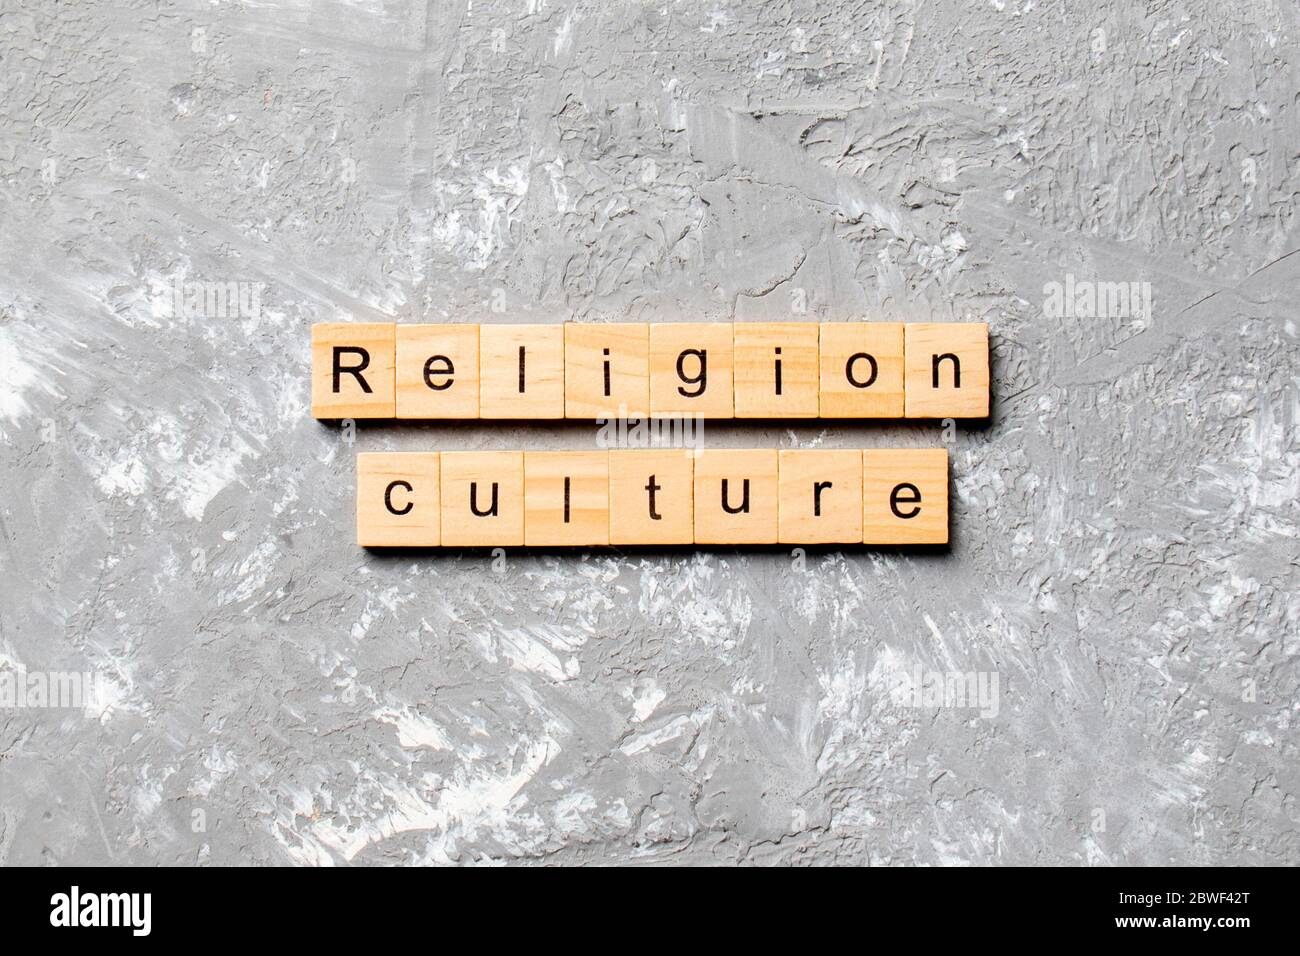 Religion Culture mot écrit sur bloc de bois. Religion Culture texte sur ciment table pour votre conception, concept. Banque D'Images